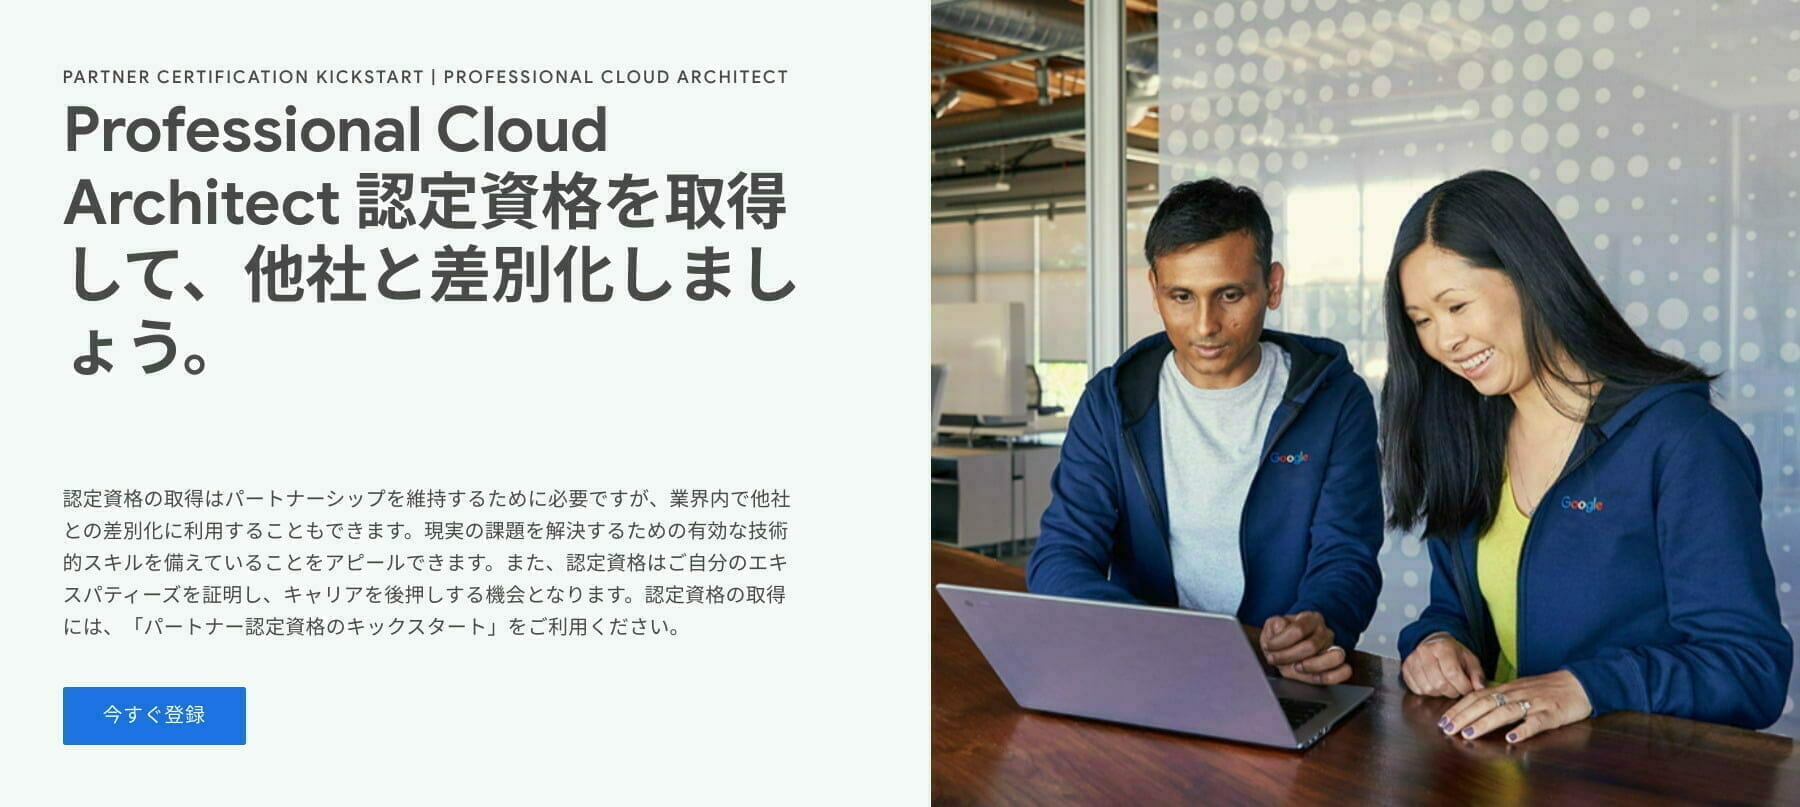 パートナー認定資格のキックスタート：Professional Cloud Architect 認定資格を取得して、他社と差別化しましょう。